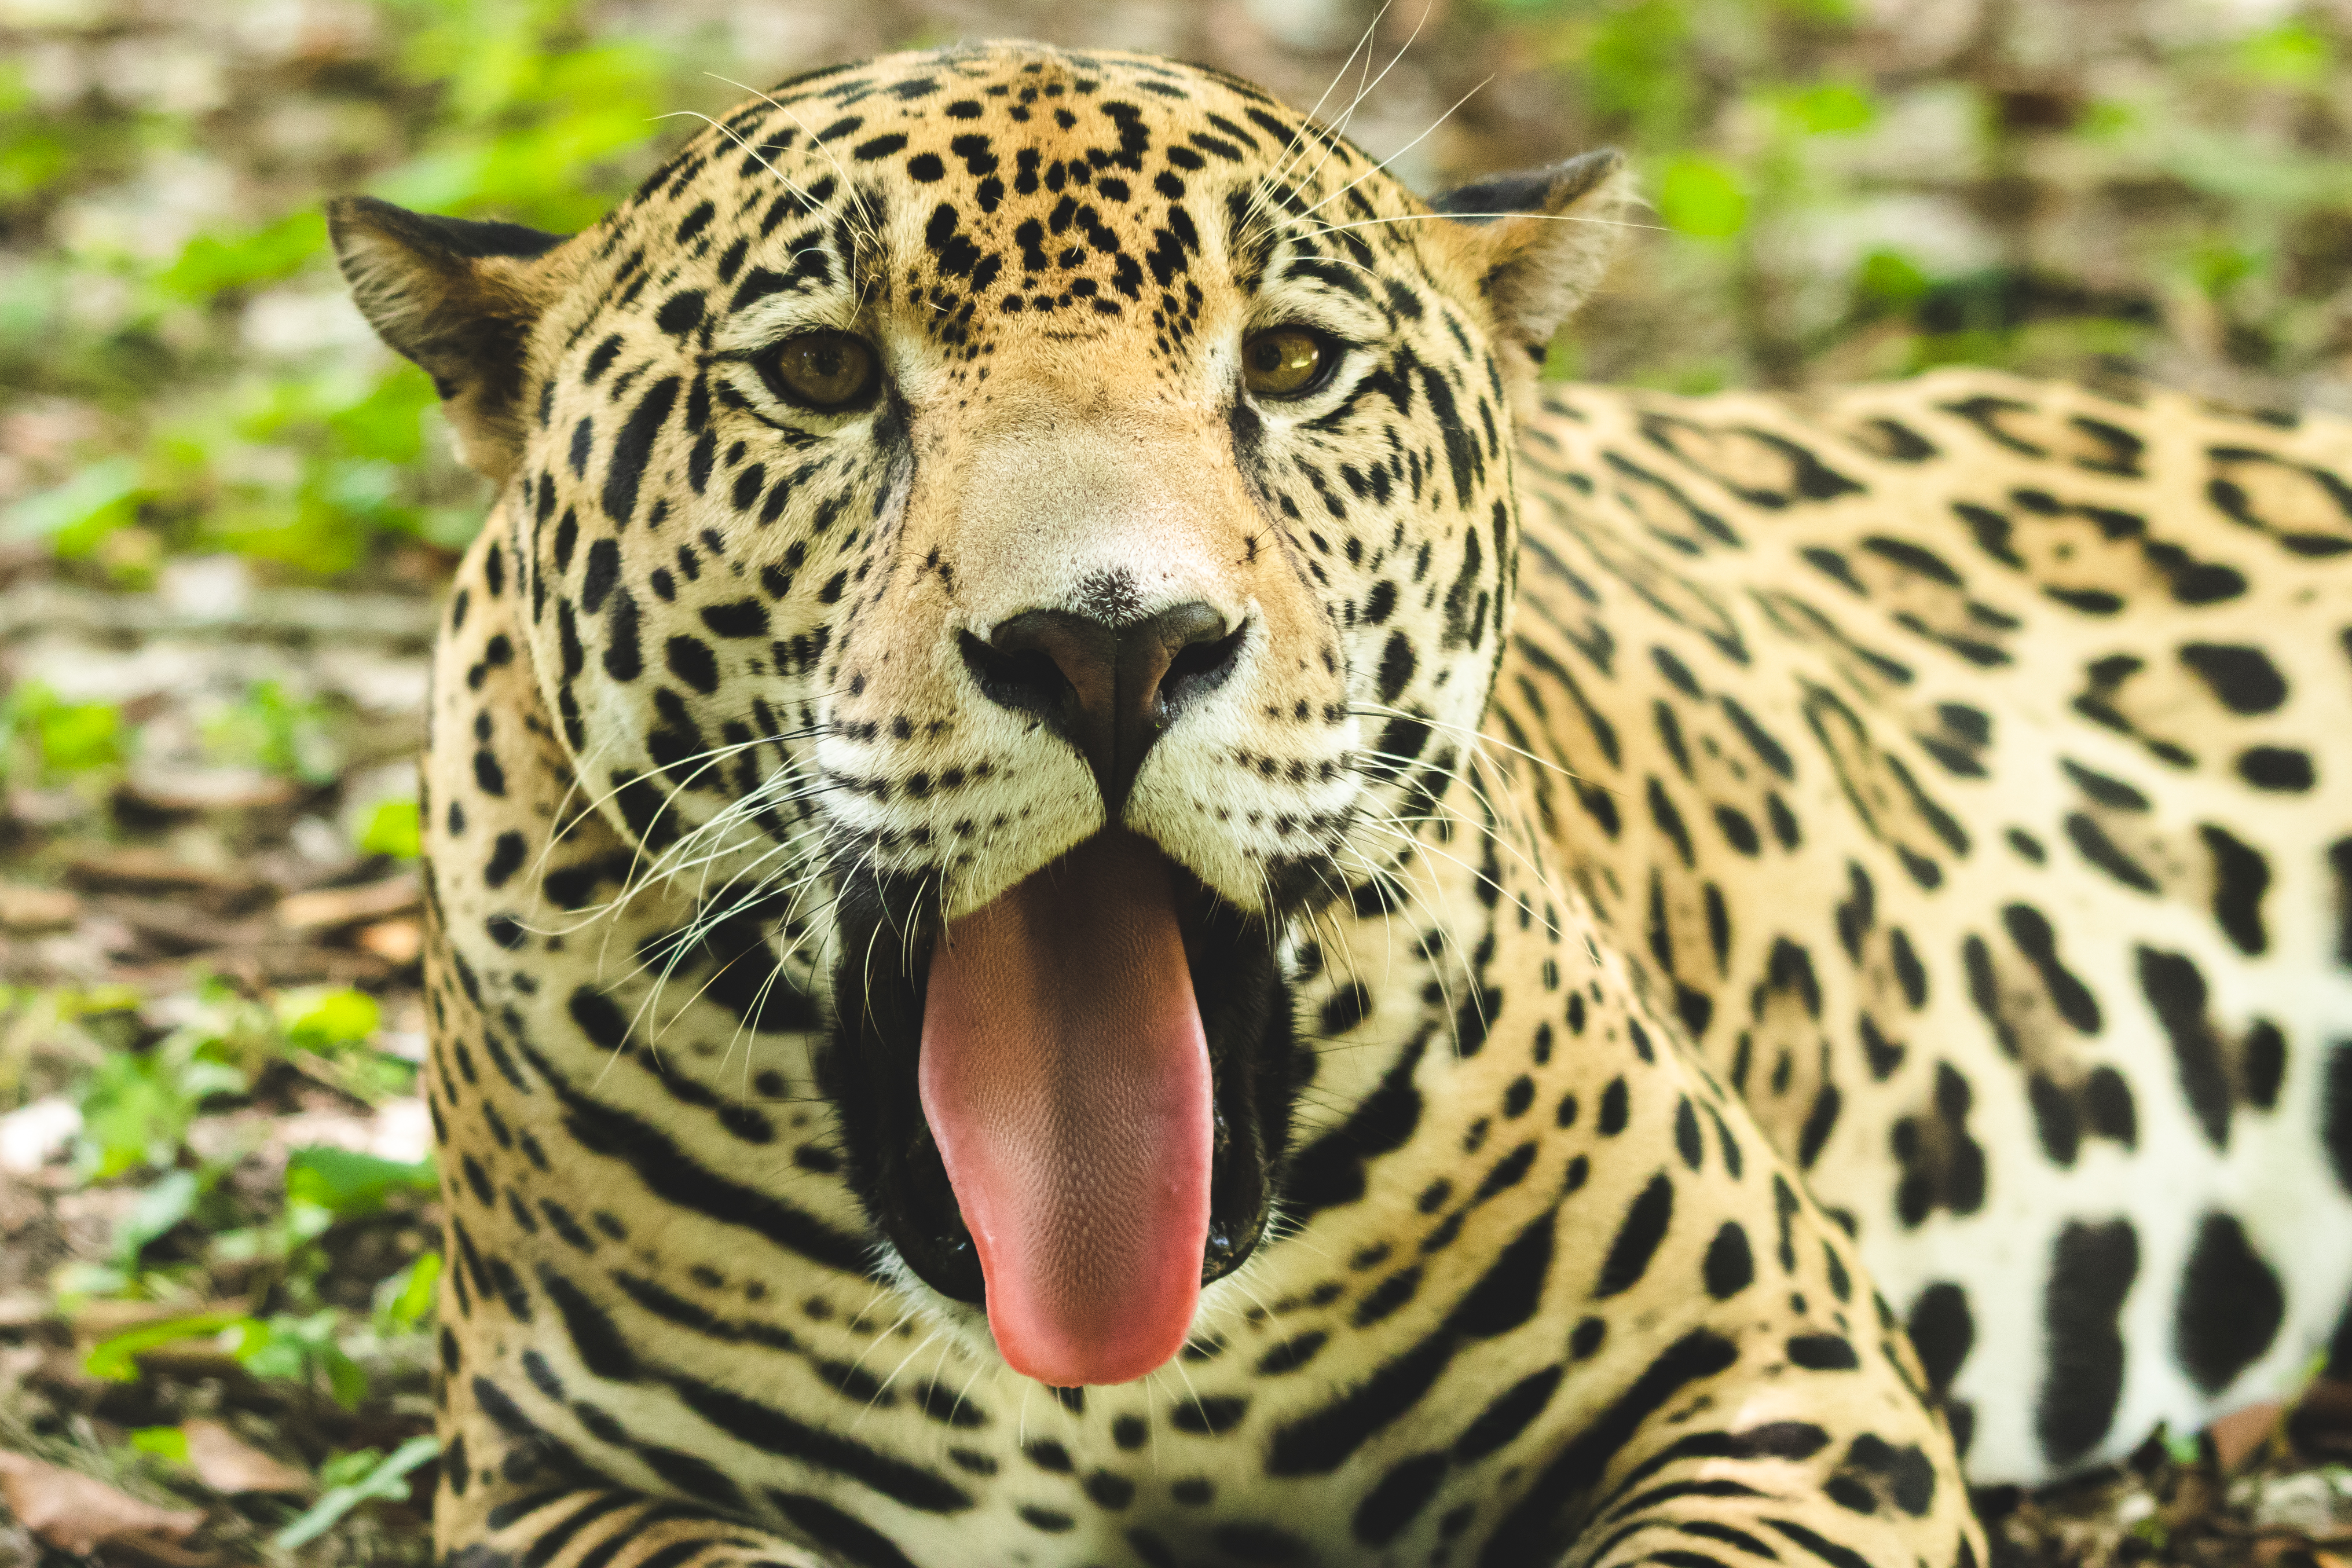 El jaguar se encuentra en peligro de extinción en Guatemala, el 29 de noviembre Día Internacional del Jaguar se busca concienciar y divulgar los esfuerzos de conservación. (Foto Prensa Libre: Conap)